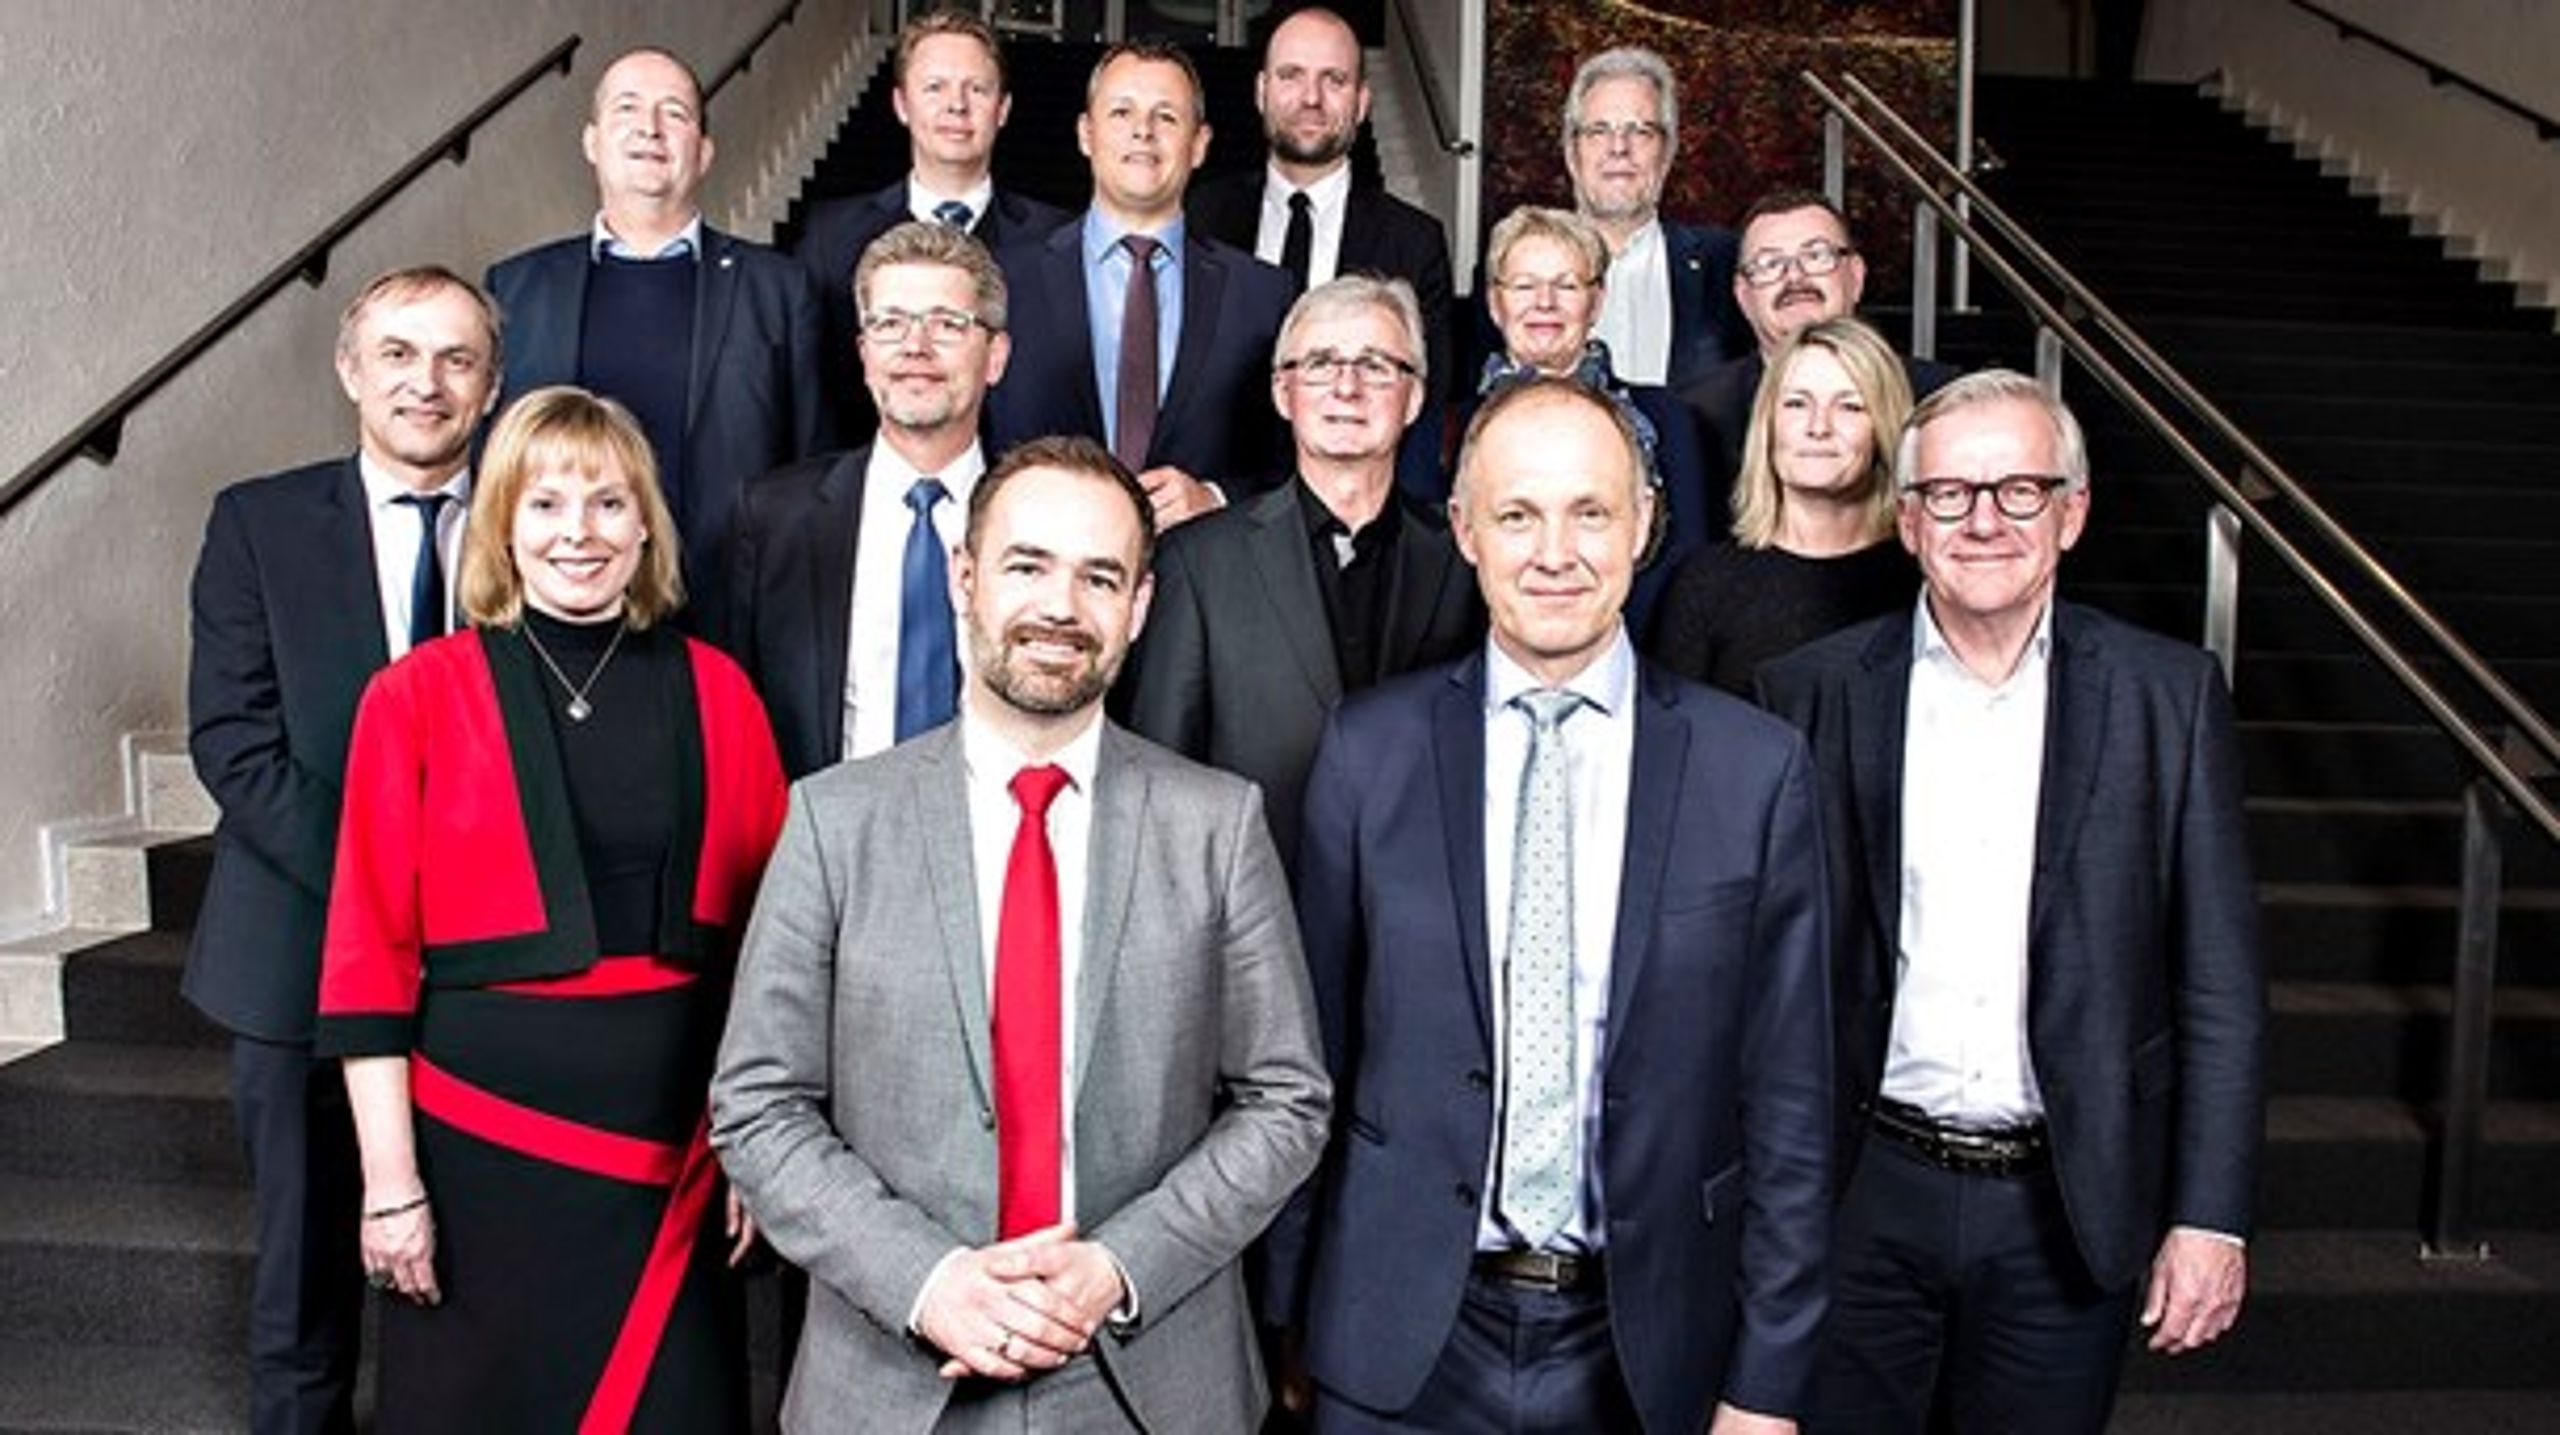 KL fik torsdag ny bestyrelse. Jacob Bundsgaard (S) (<i>forrest til venstre)&nbsp;</i>blev ny formand. Martin Damm (V) (<i>til højre</i>) er ny næstformand.